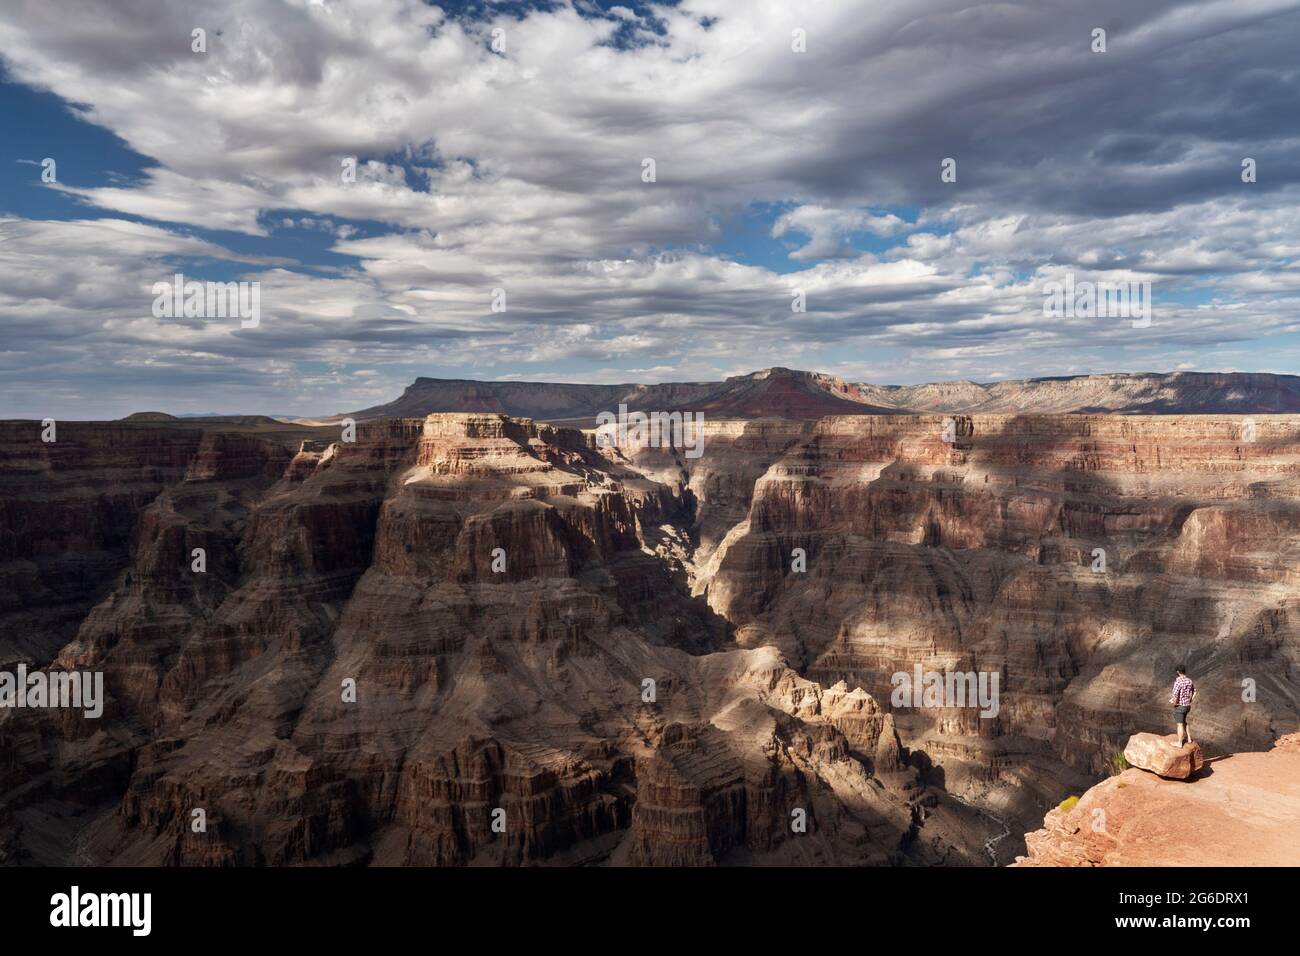 Les murs naturels du Grand Canyon s'offrent à vous dans un décor nuageux Banque D'Images